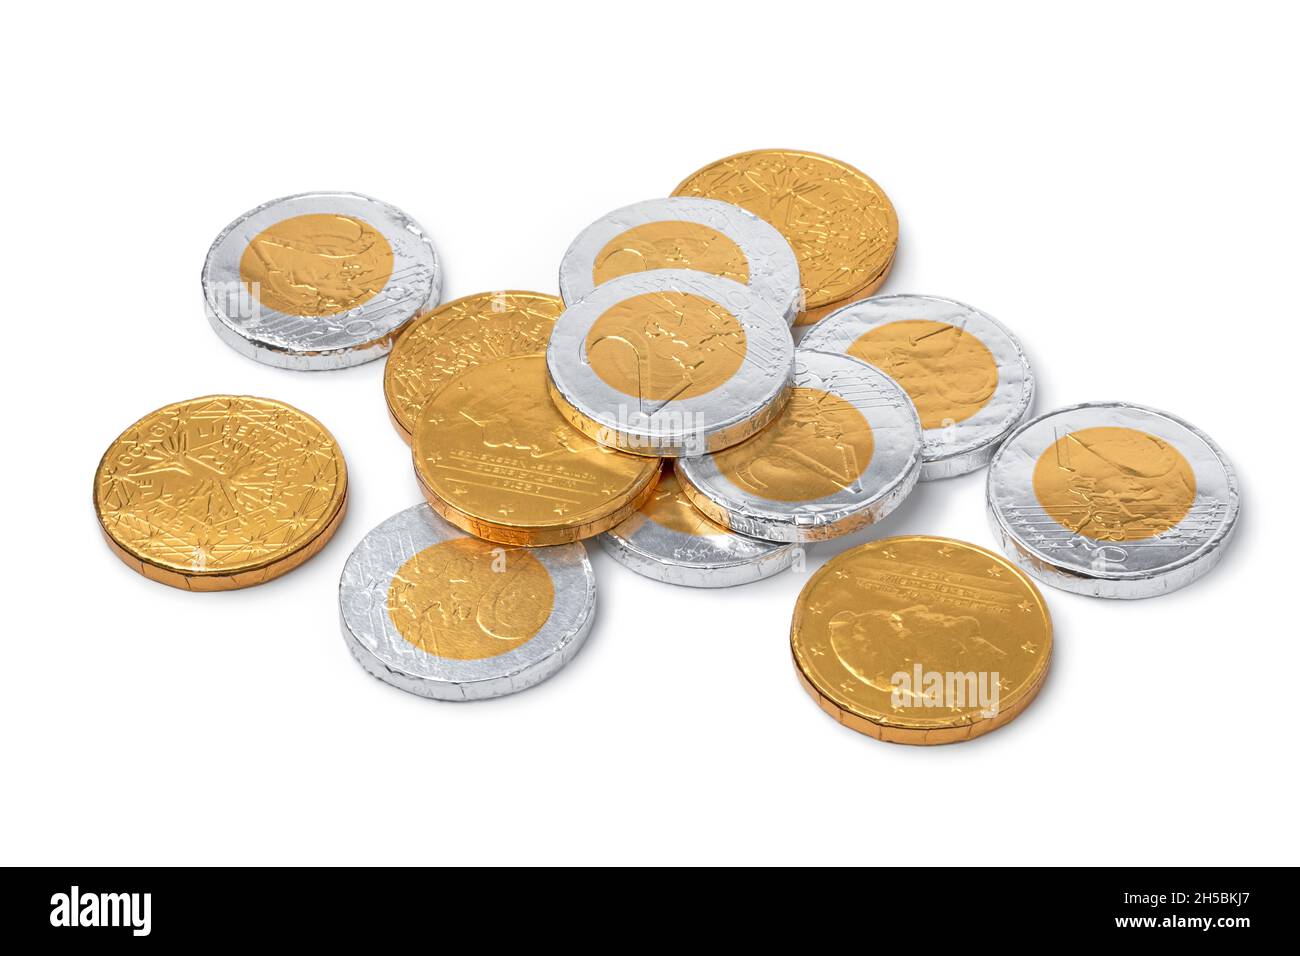 Haufen von goldenen und silbernen Schokoladenmünzen für die Feier von Sint Nicolaas Nahaufnahme auf weißem Hintergrund Stockfoto